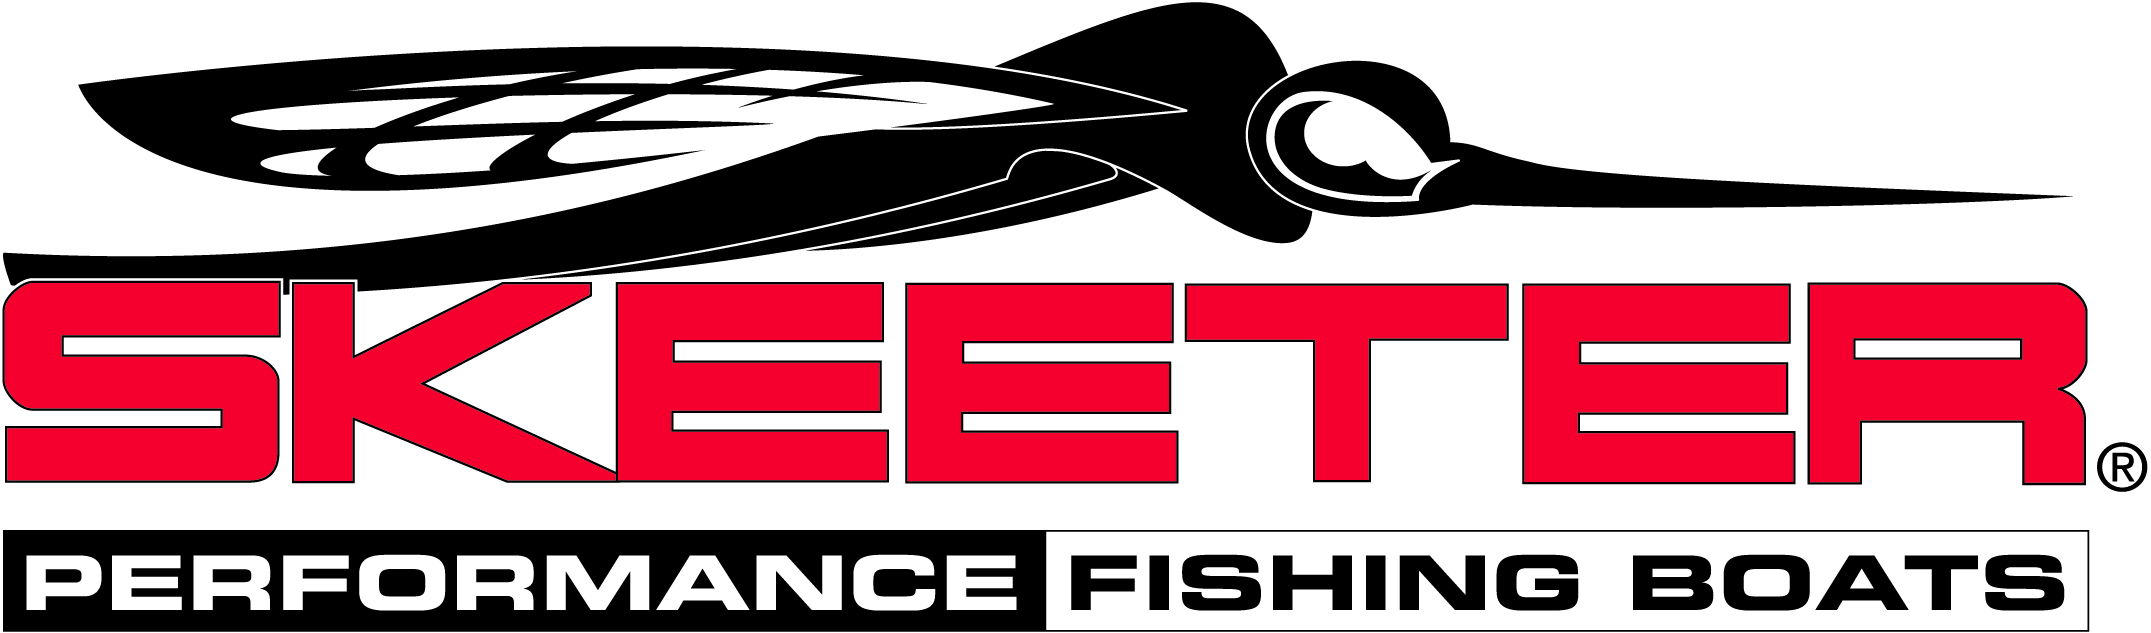 Skeeter Boat Logo Wallpaper